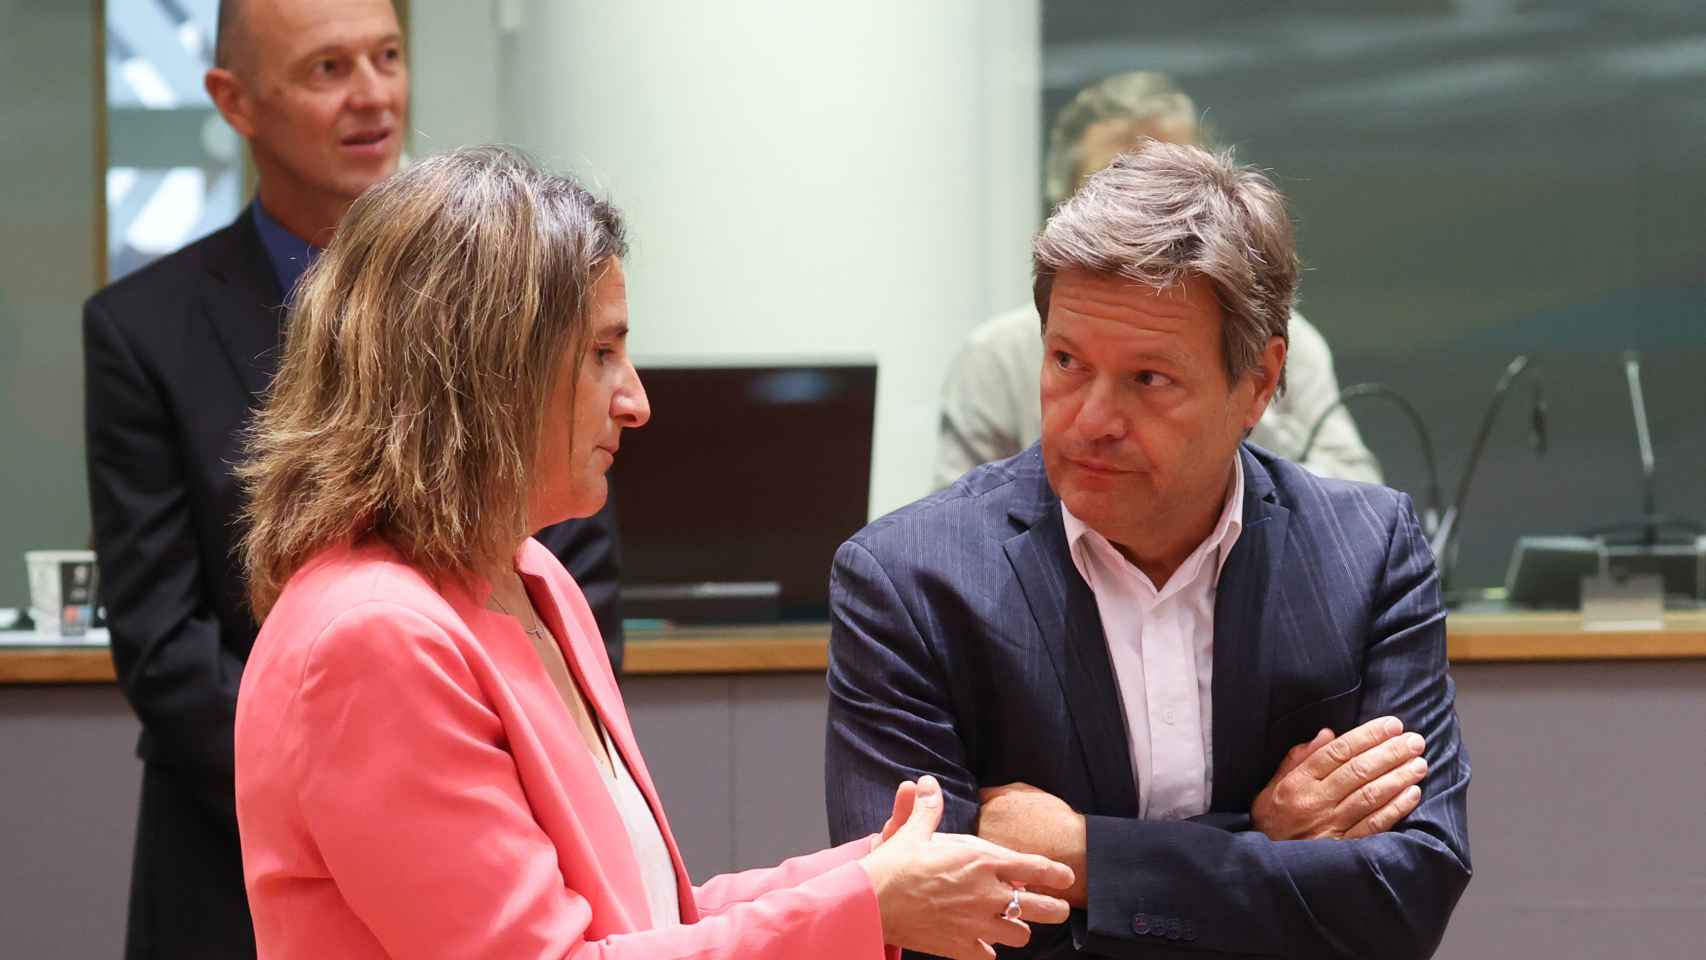 La vicepresidenta Teresa Ribera conversa con su homólogo alemán, Robert Habeck, durante una reunión en Bruselas